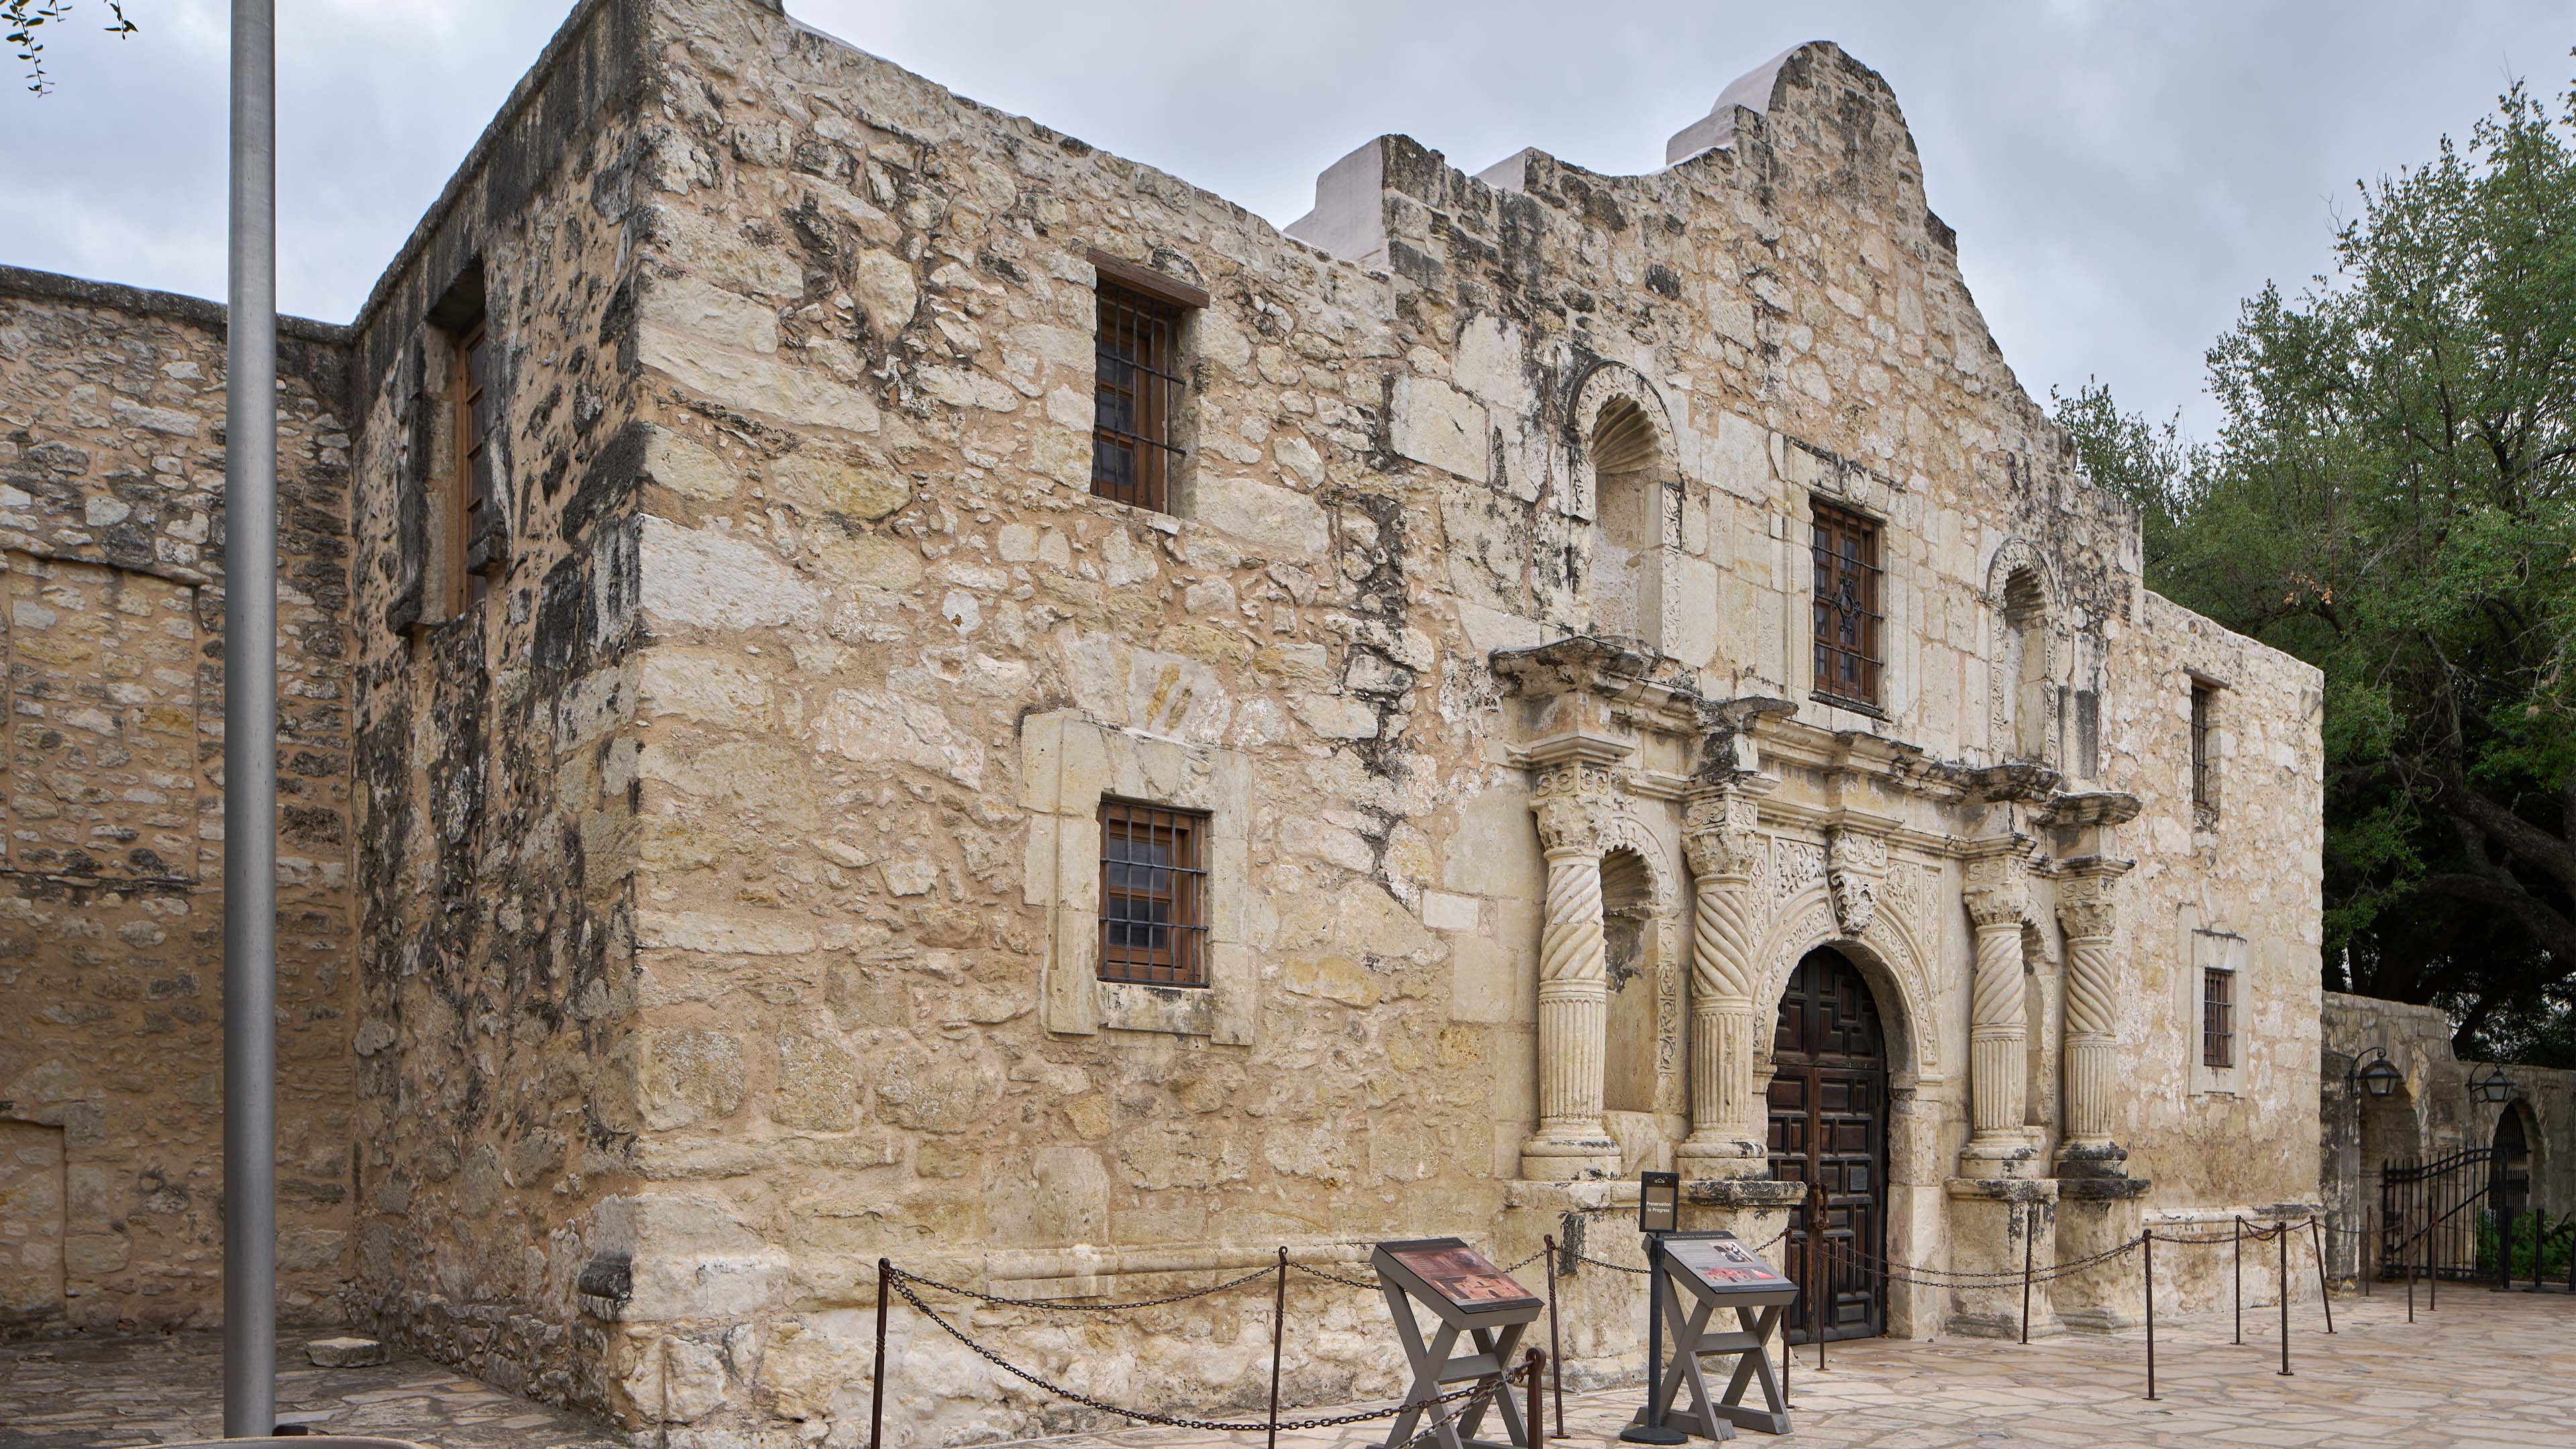 Exterior shot of the Alamo